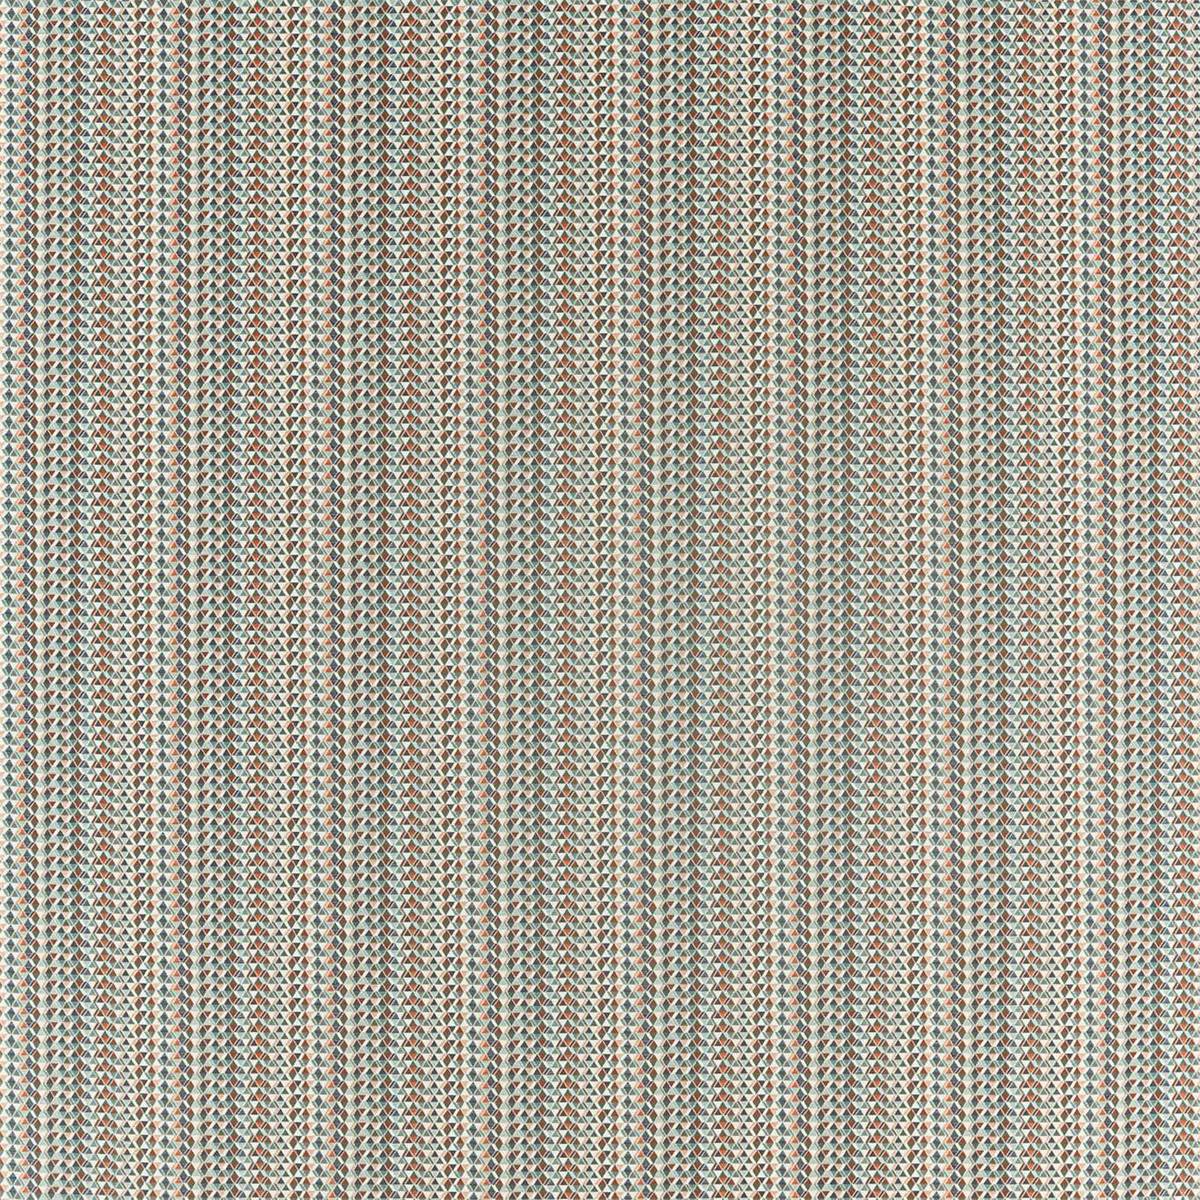 Concentric Pimento Fabric by Scion